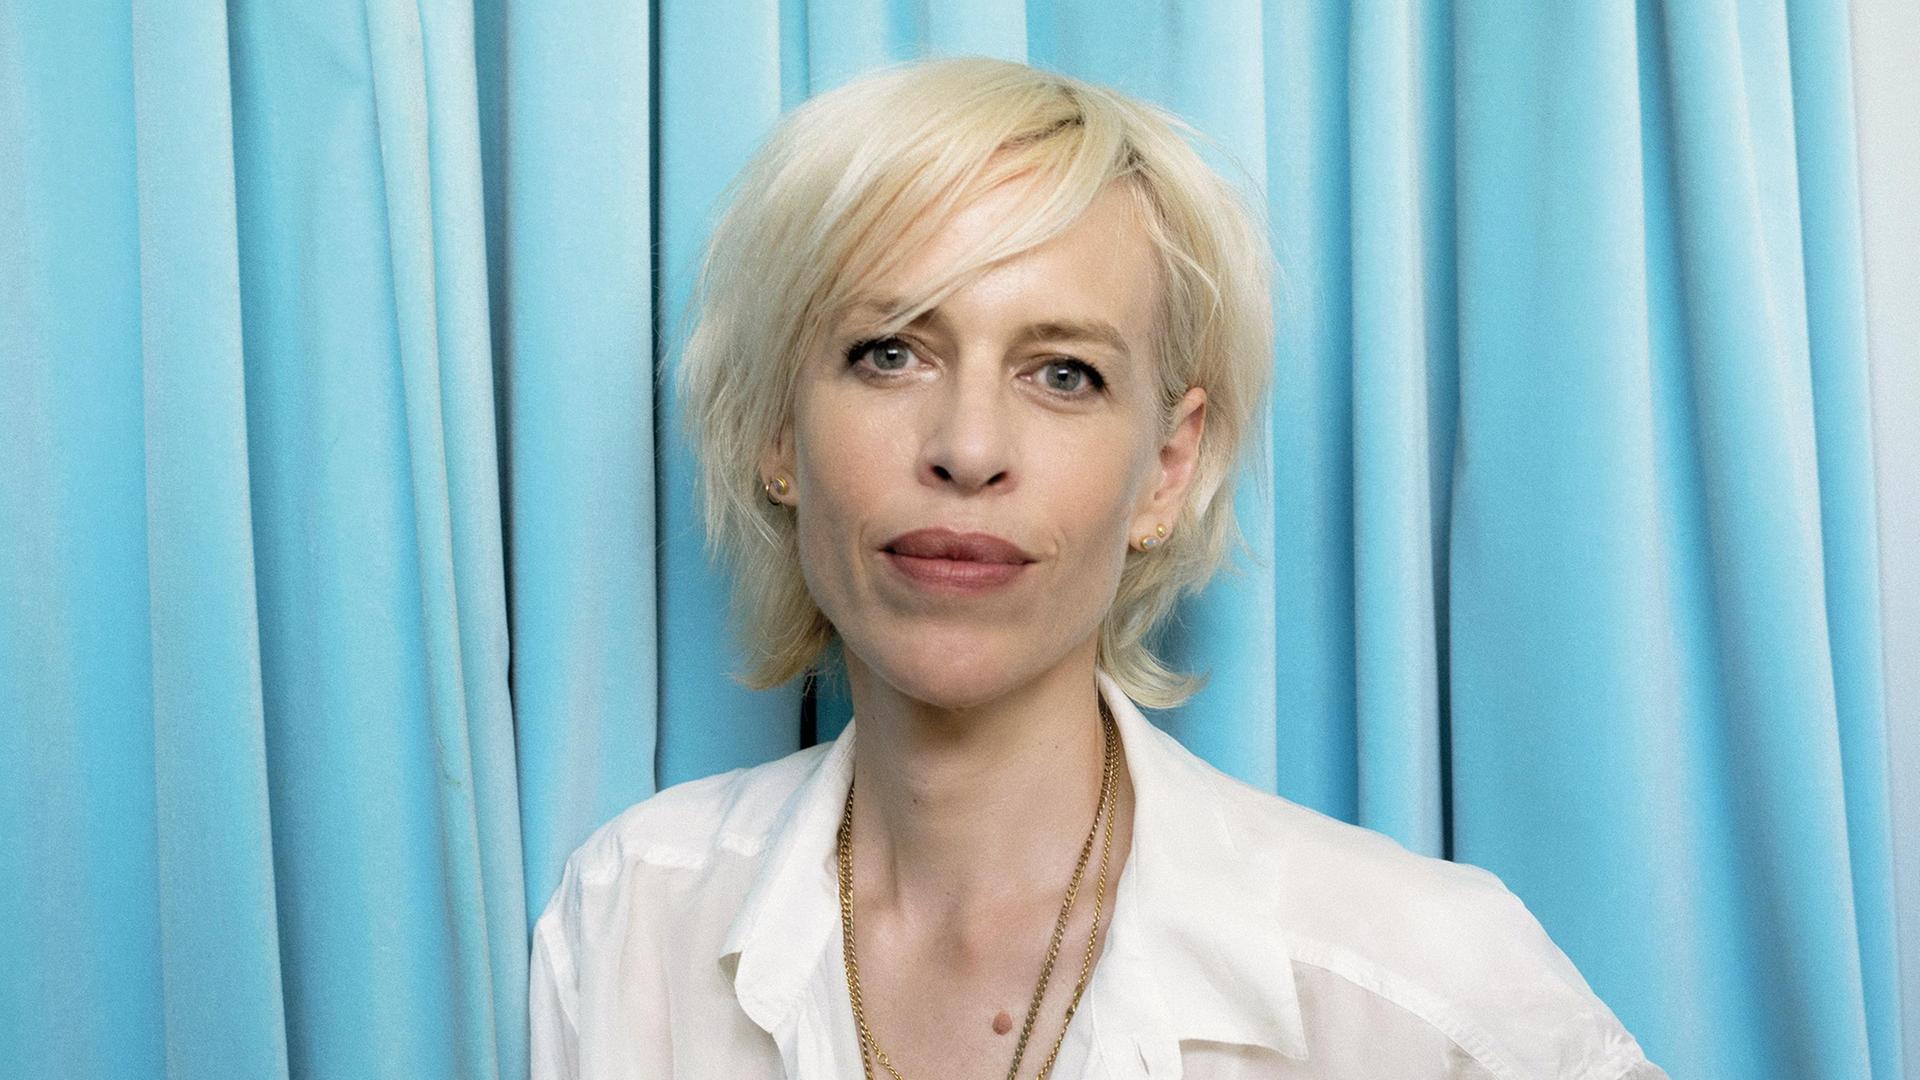 Porträtfoto der Journalistin und Autorin Katja Eichinger. Sie trägt eine weiße Bluse und steht vor einem hellblauen Vorhang.